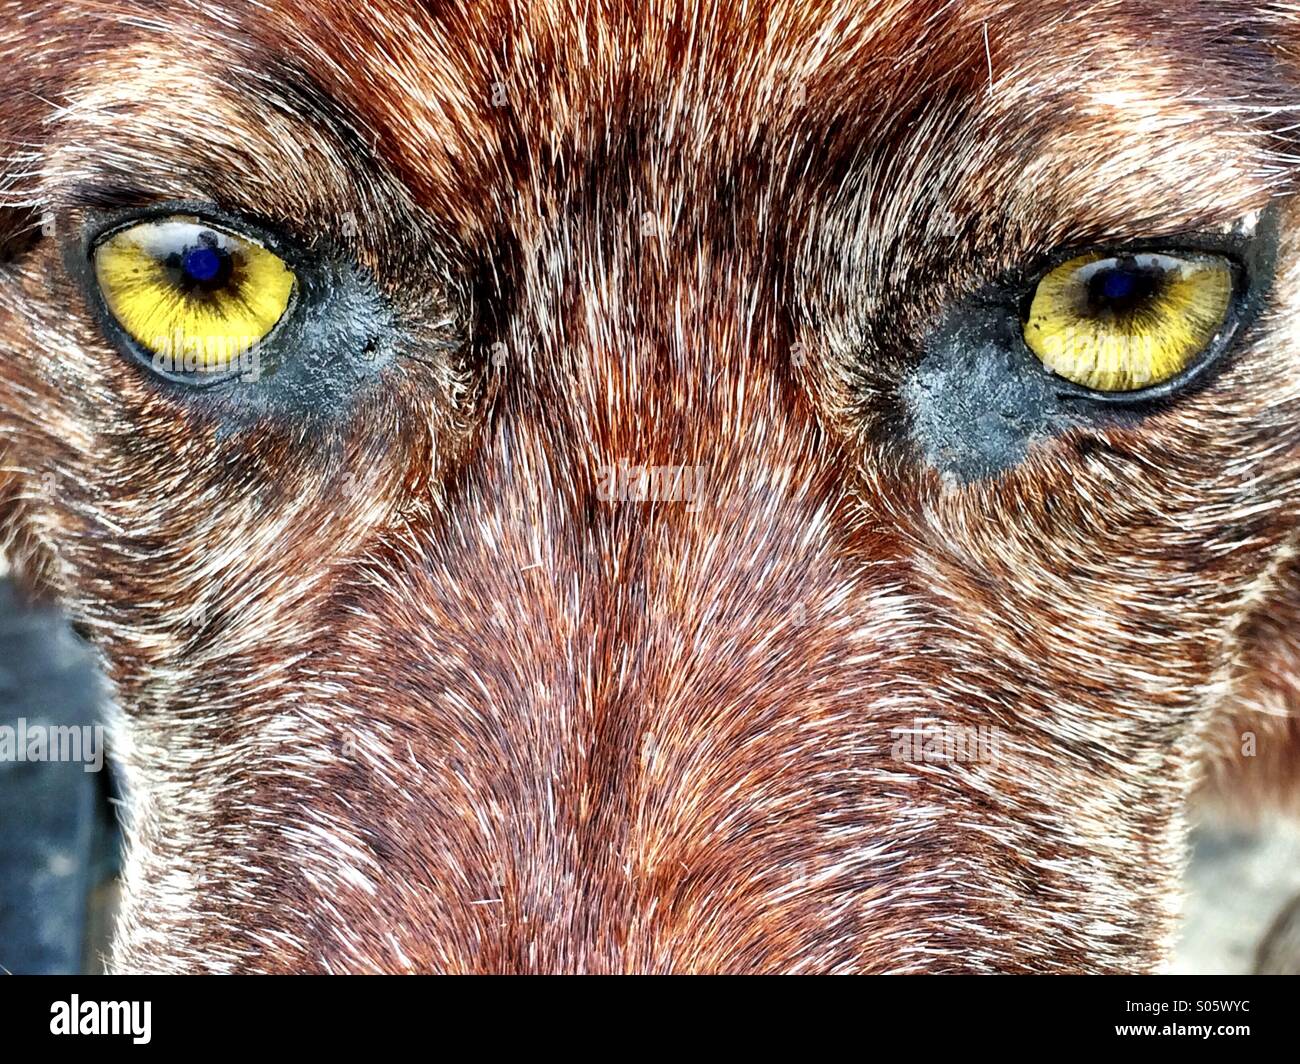 Lobo de madera cerca de los ojos y de la cara. Foto de stock